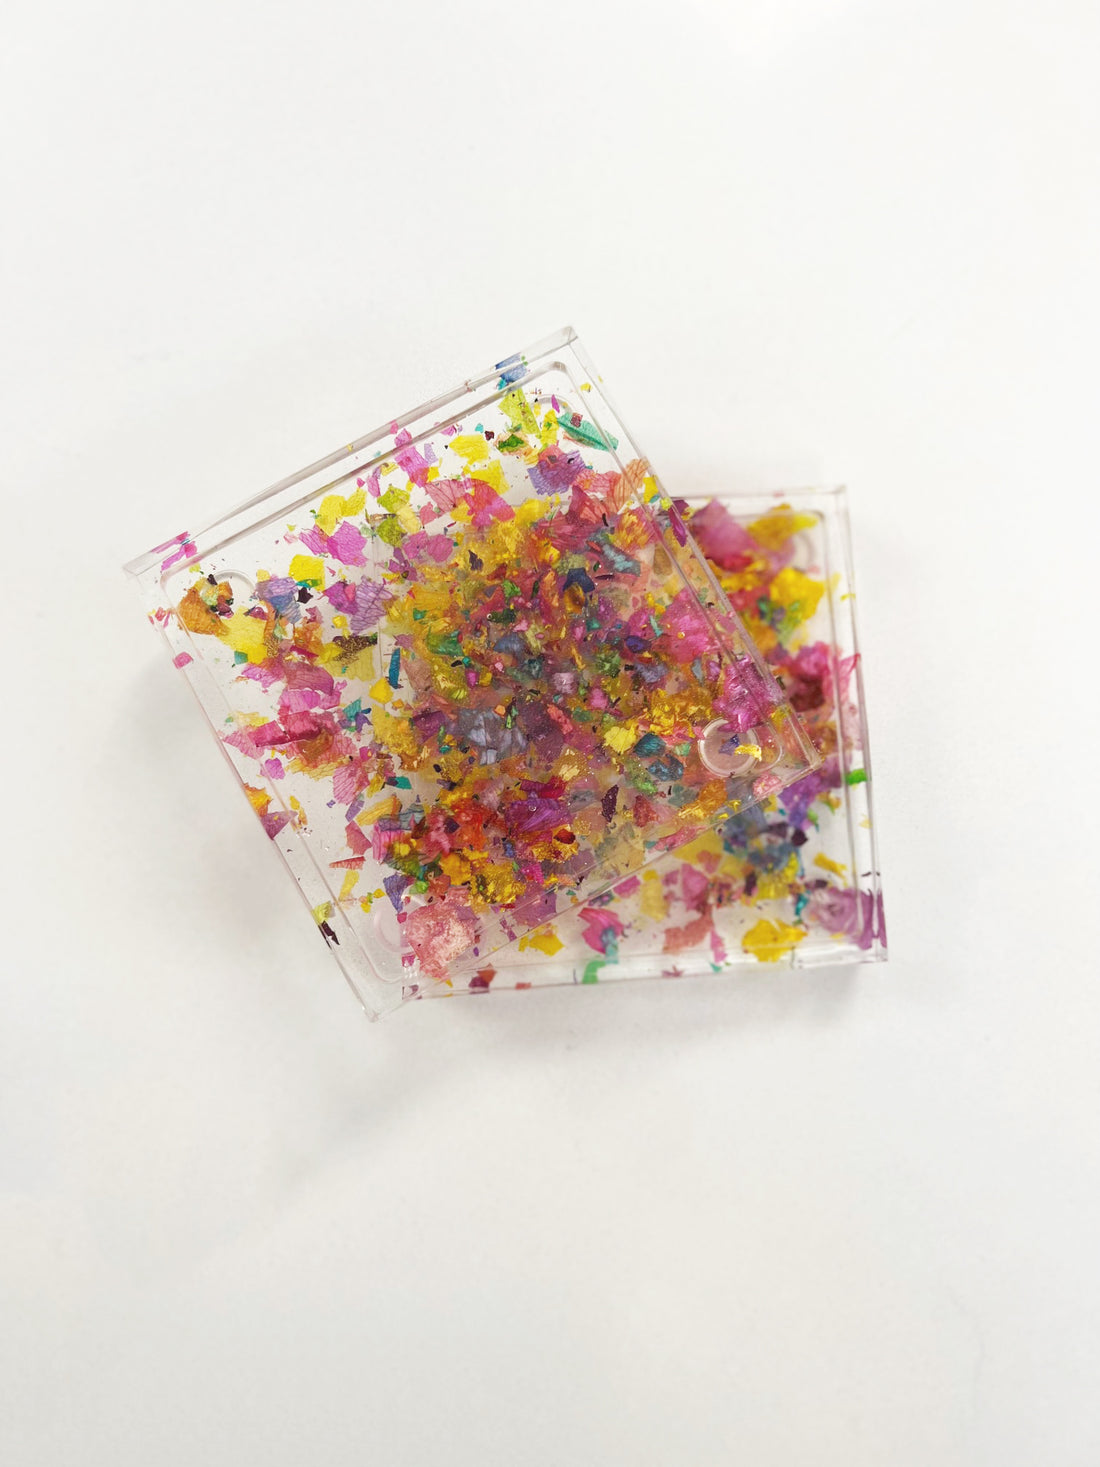 Pride month petal confetti coasters